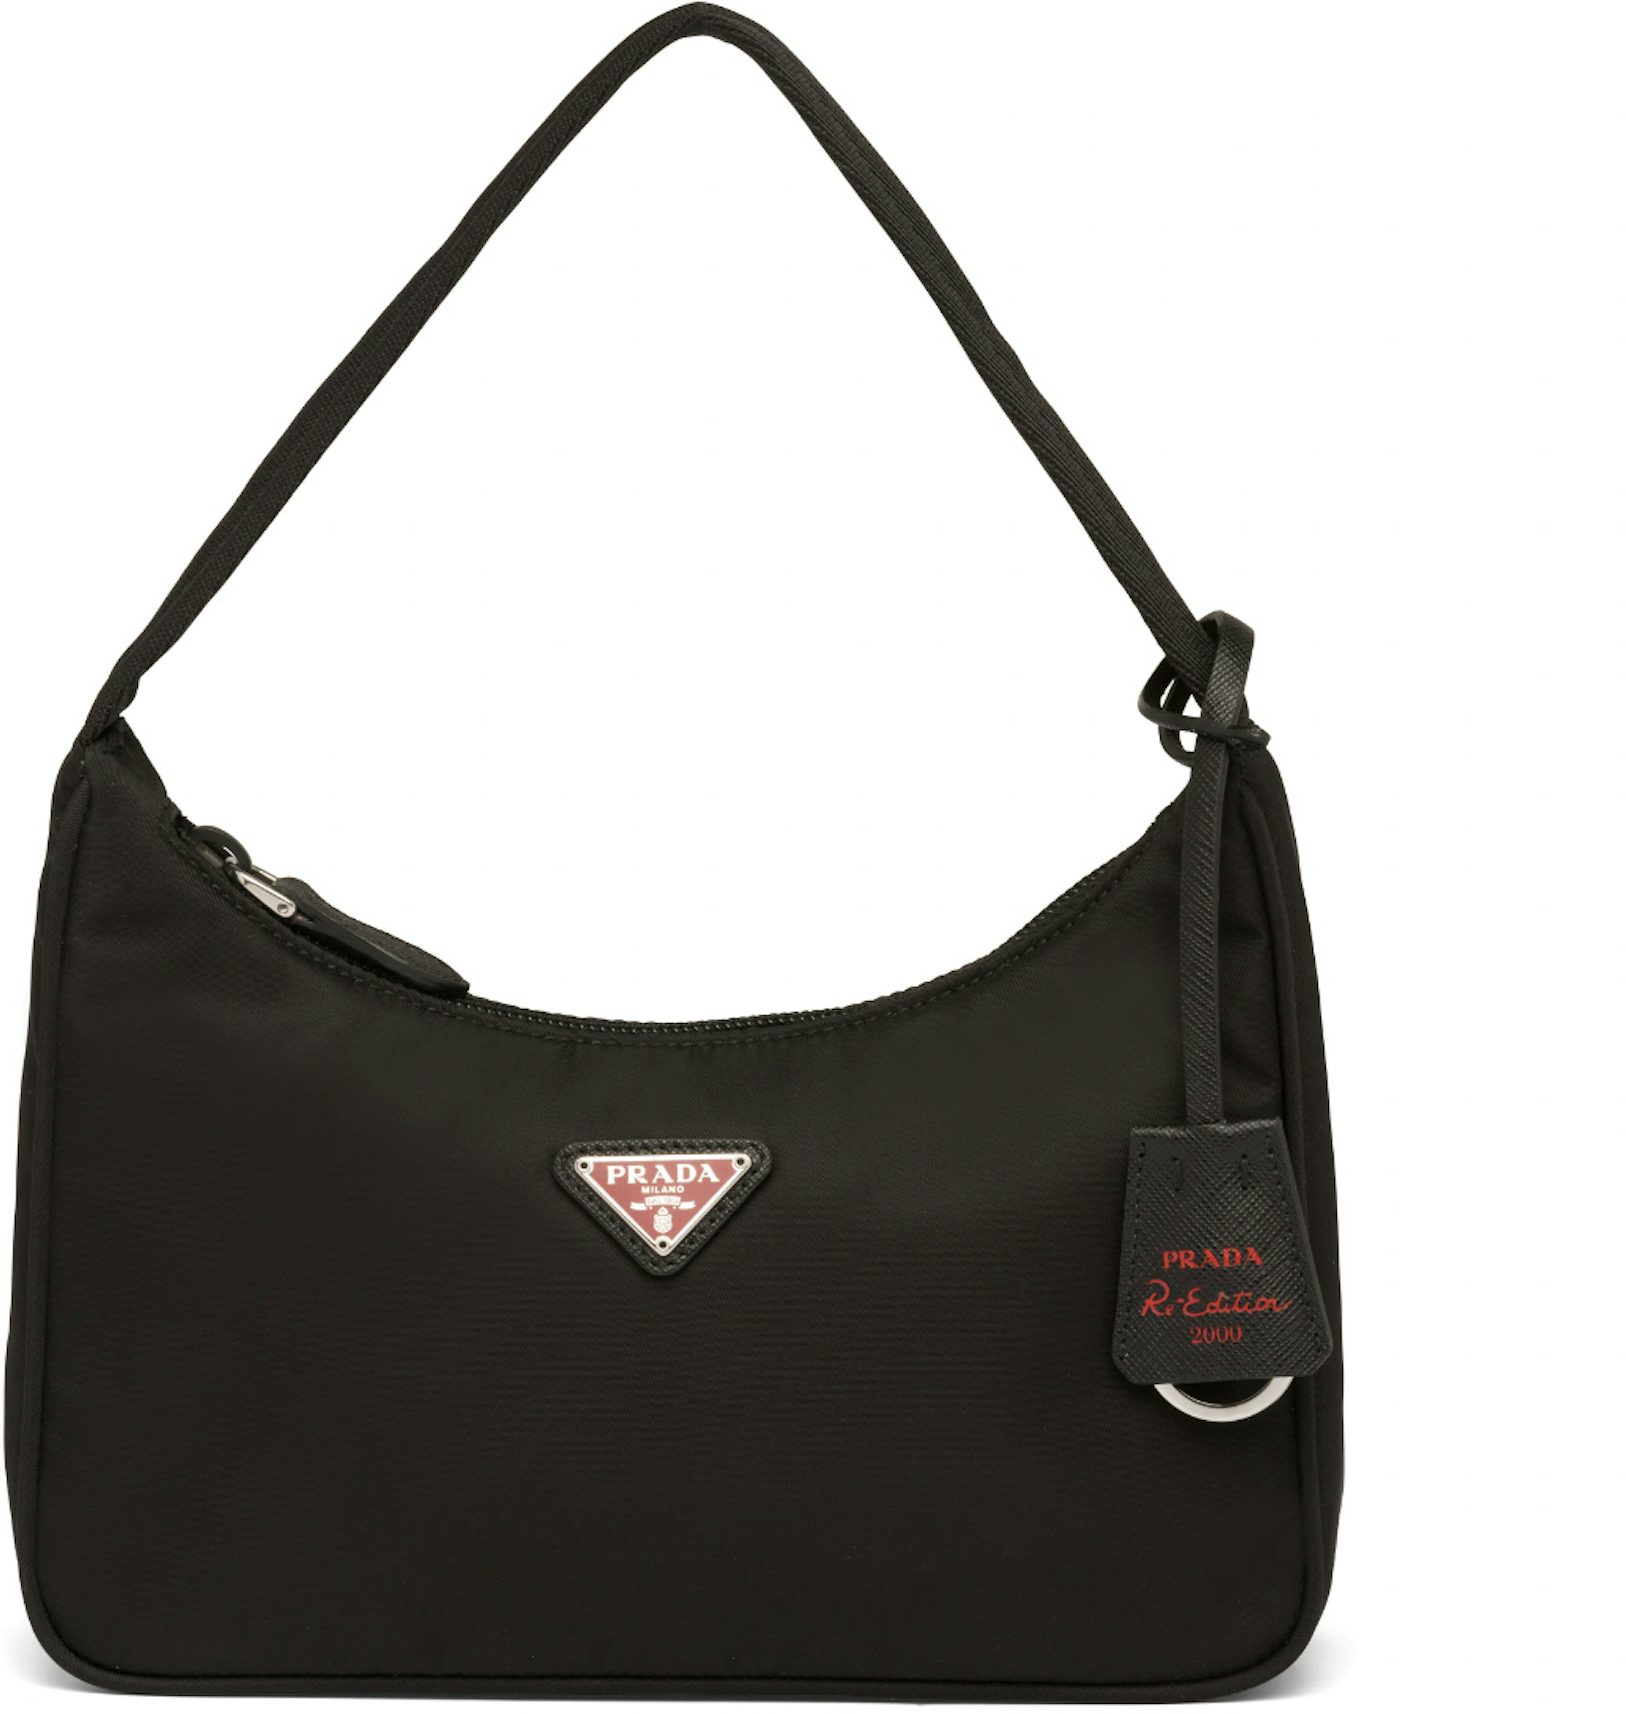 Re-edition 2000 handbag Prada Black in Synthetic - 30882501